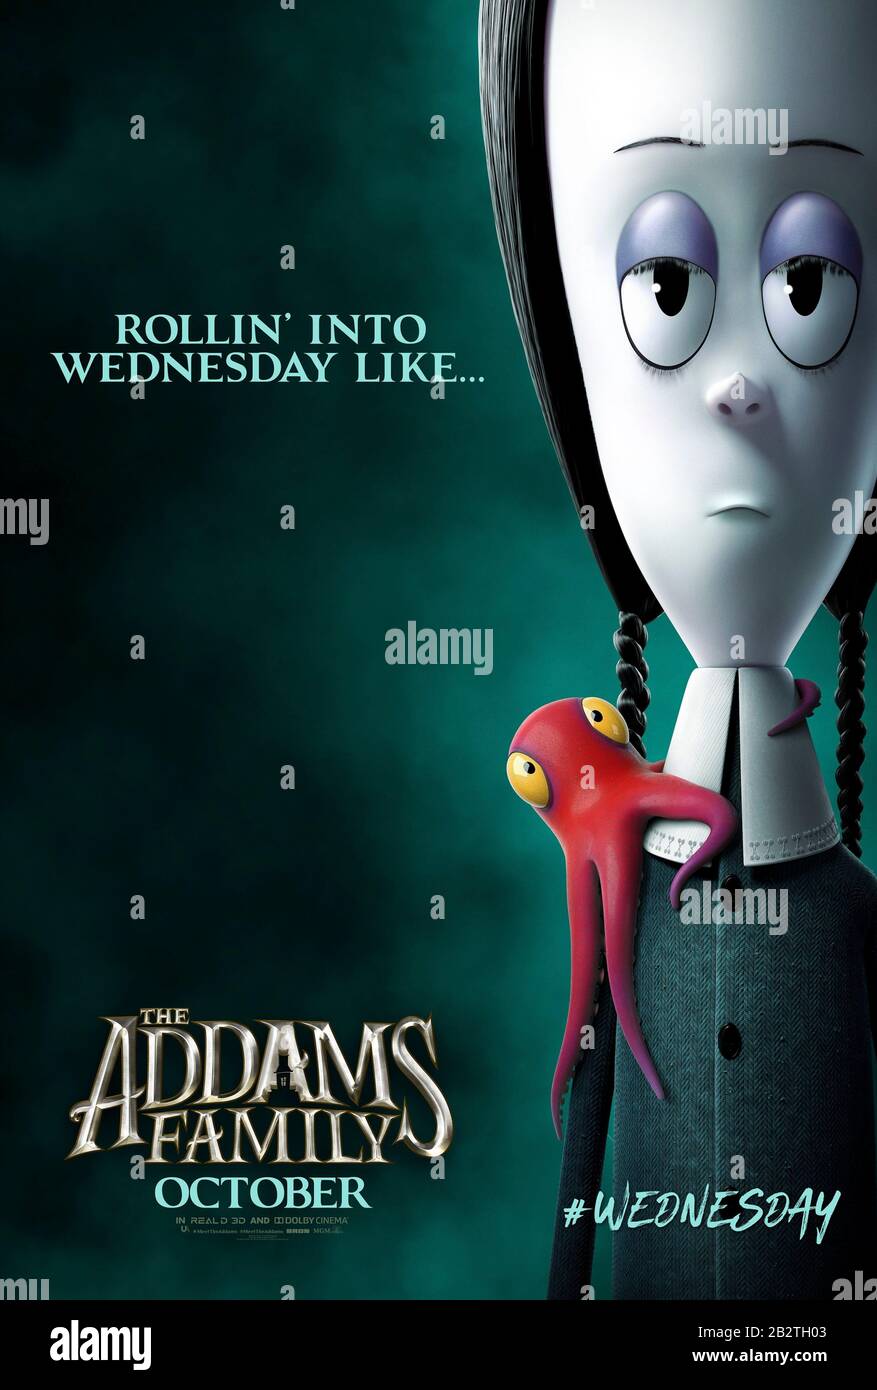 The Addams Family (2019) unter der Regie von Greg Tiernan und Conrad Vernon und mit Chloë Grace Moretz als Wednesday Addams in der Hauptrolle. Animationsfilm basierend auf den Figuren aus den New Yorker Cartoons von Charles Addams. Stockfoto